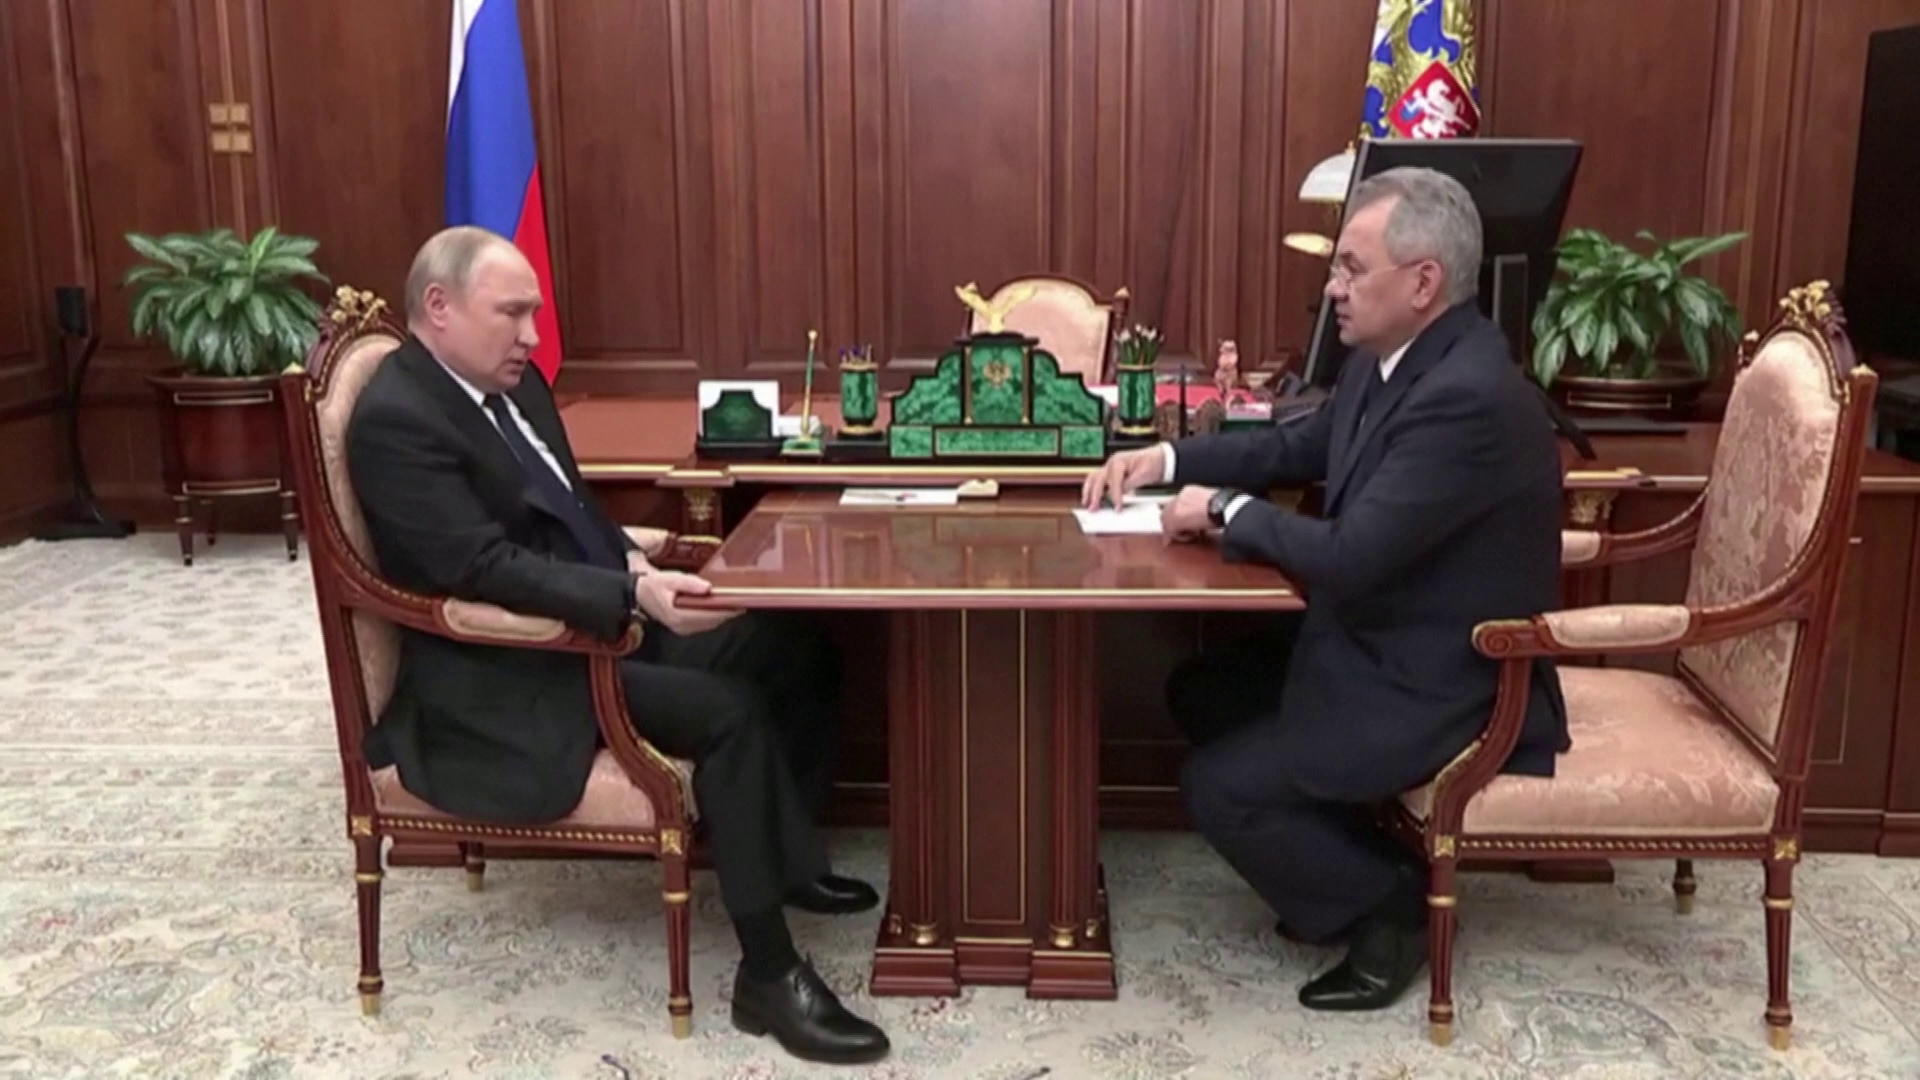 Putyin törölte az Azovstal megrohamozására vonatkozó terveket 